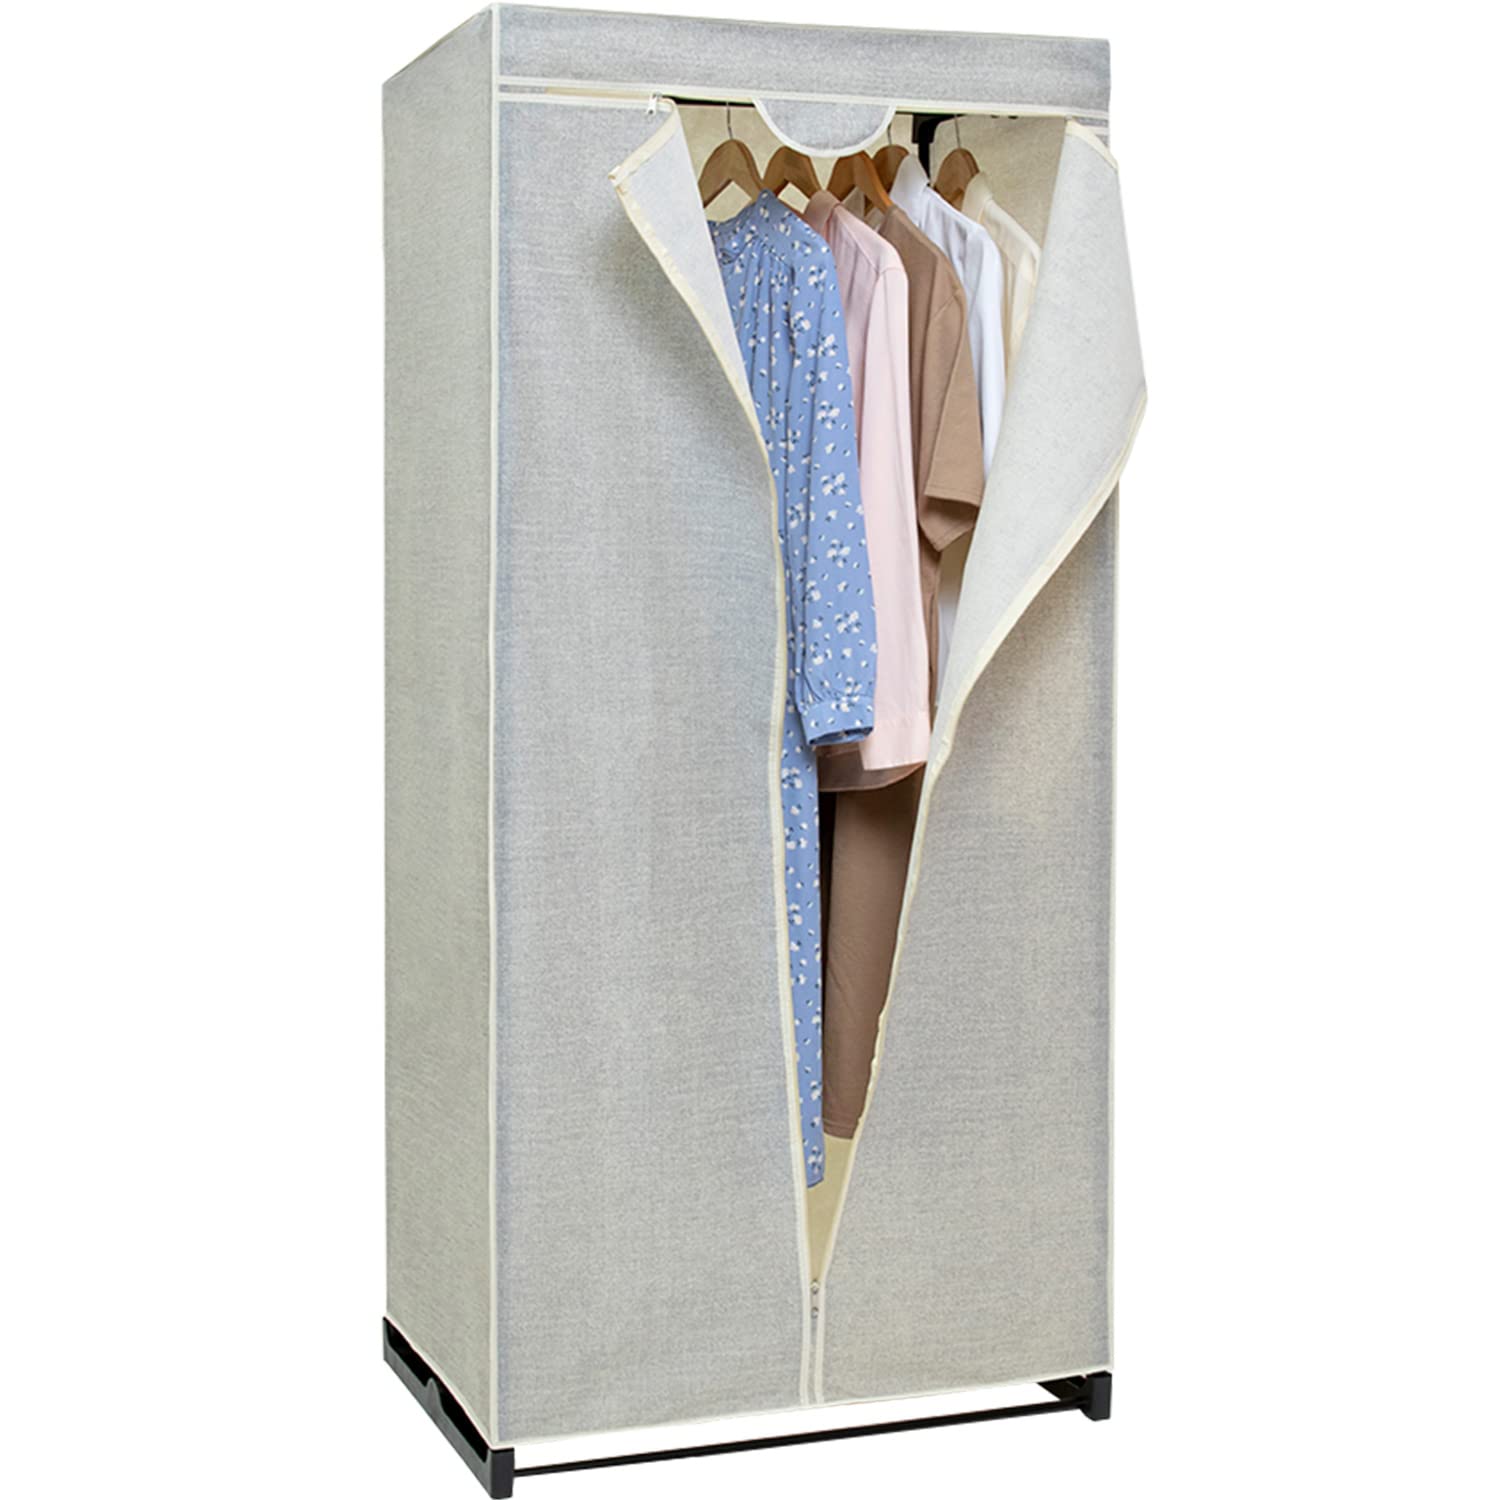 アストロ 不織布製目隠しカバー付き ワードローブ W75×D50×H160cm ナチュラル 手軽に衣類の収納スペースを拡大 通気性の良く湿気やニオ